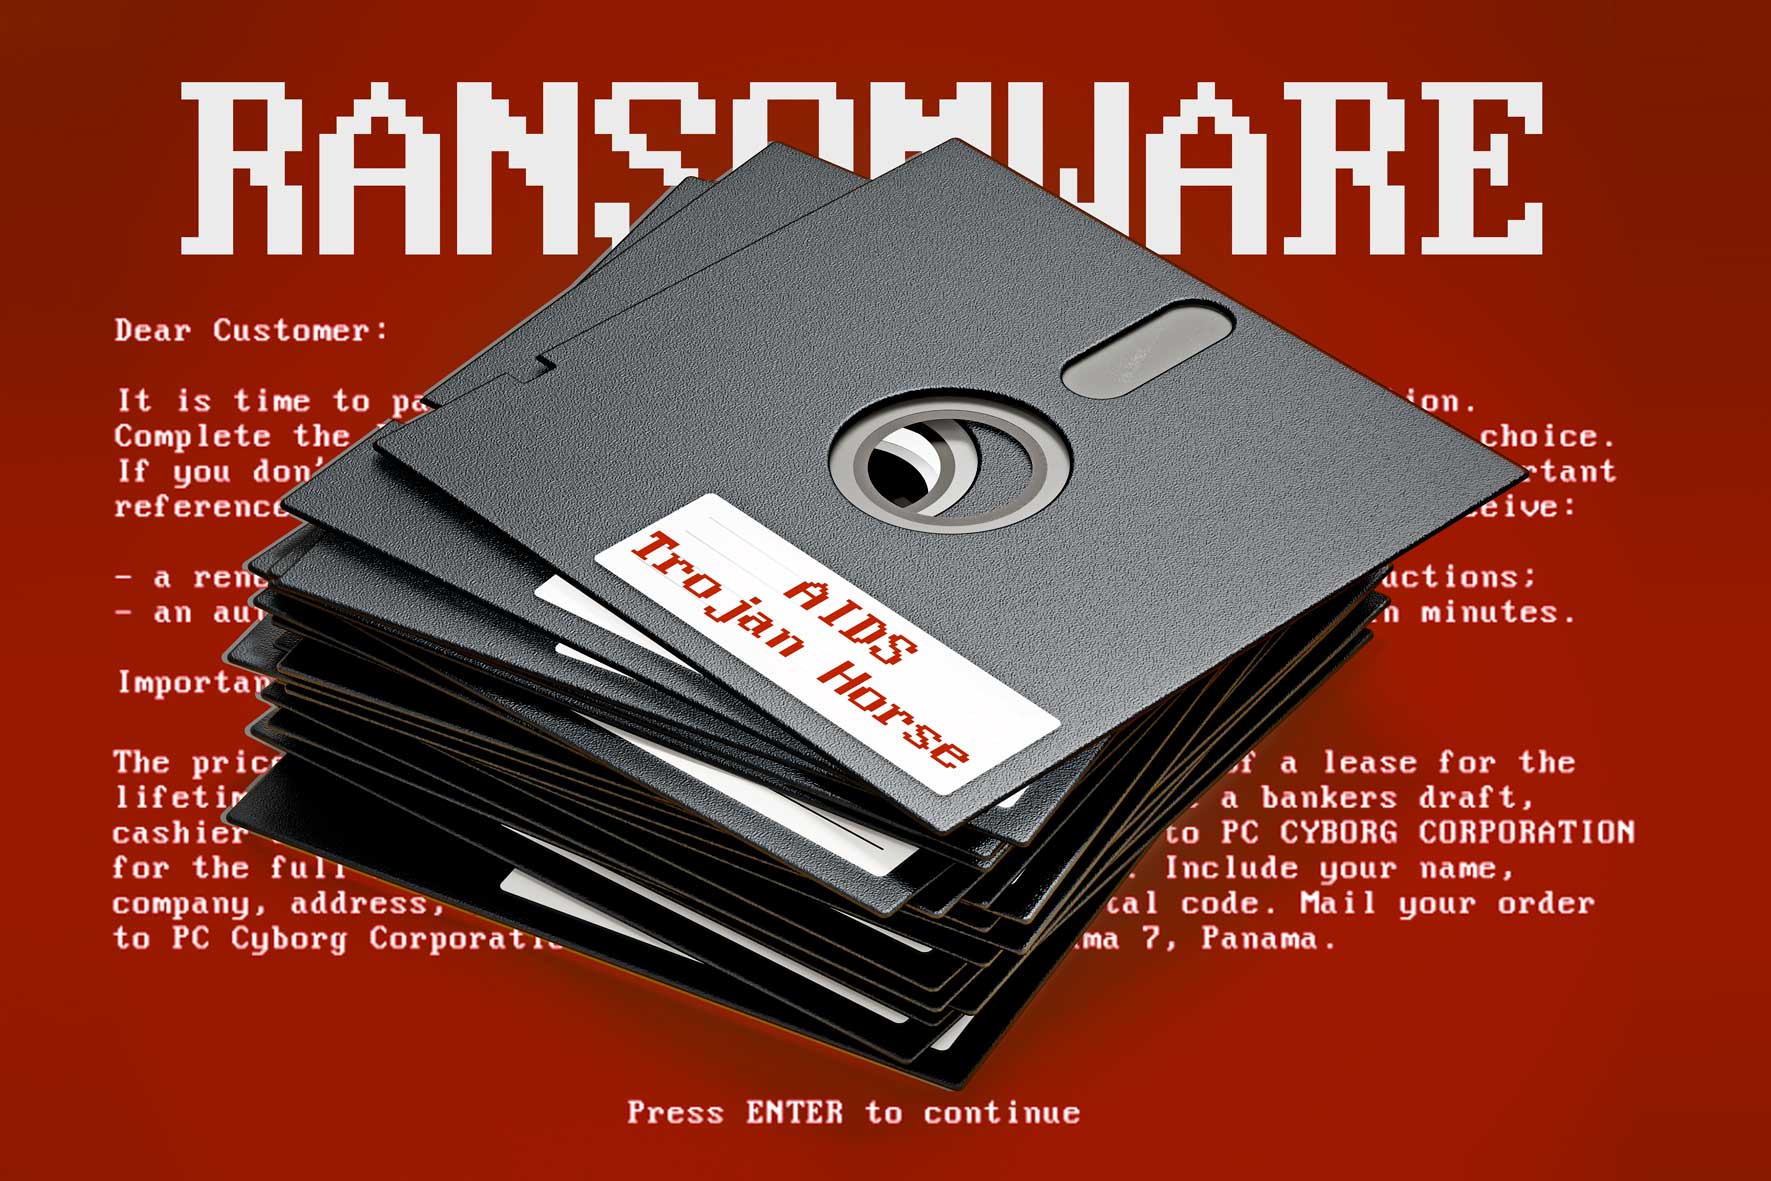 Parlem del primer atac de ciberseguretat ransomware, a L’Altra Ràdio